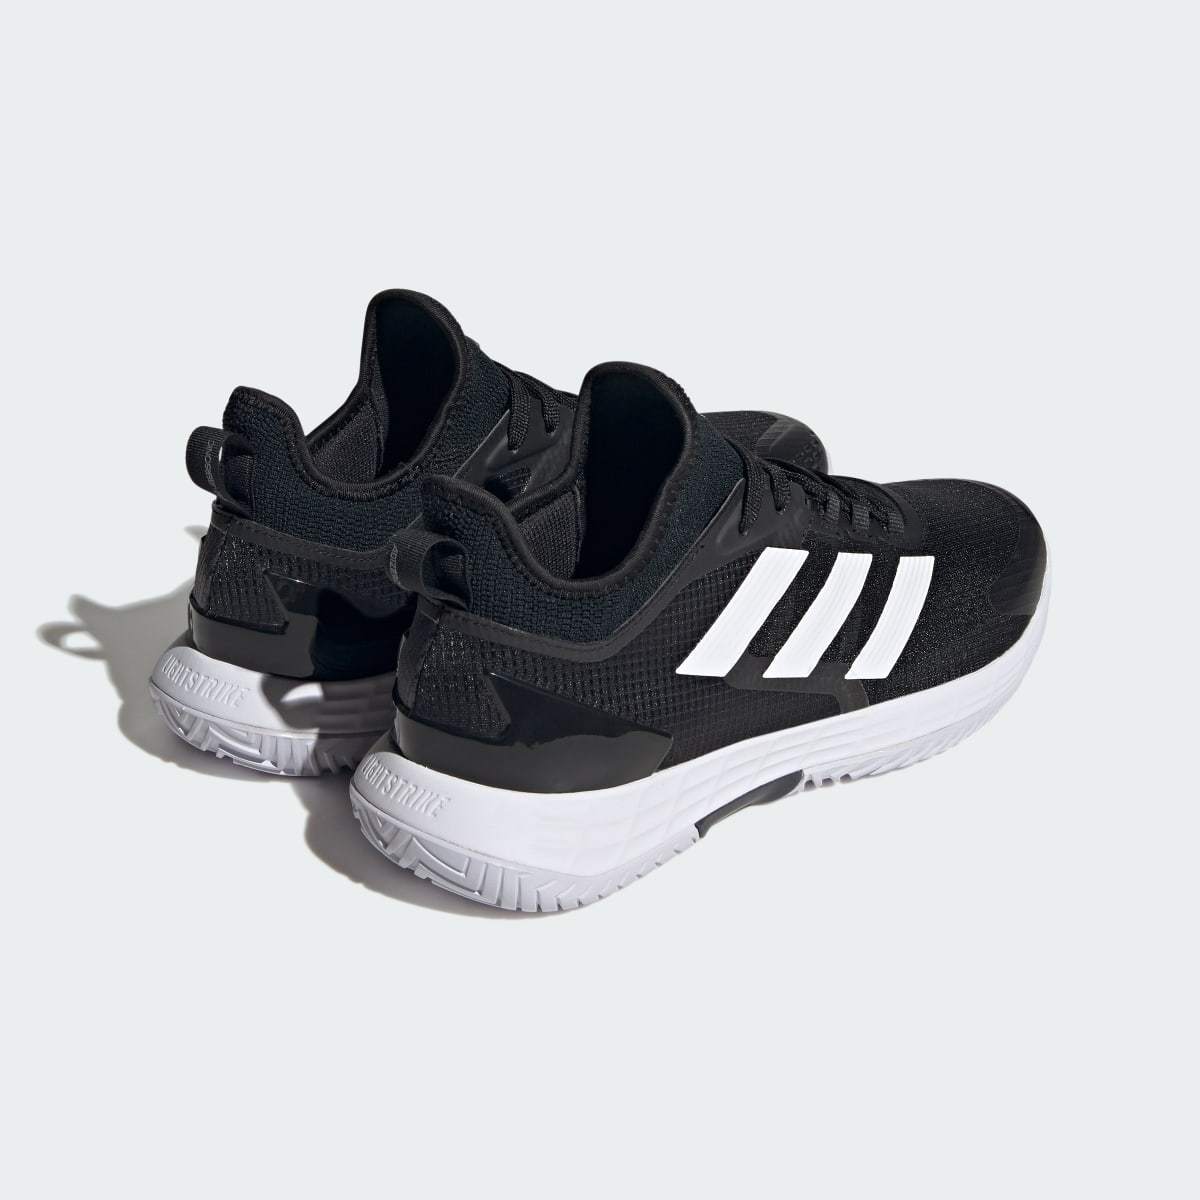 Adidas Adizero Ubersonic 4.1 Tennis Shoes. 9